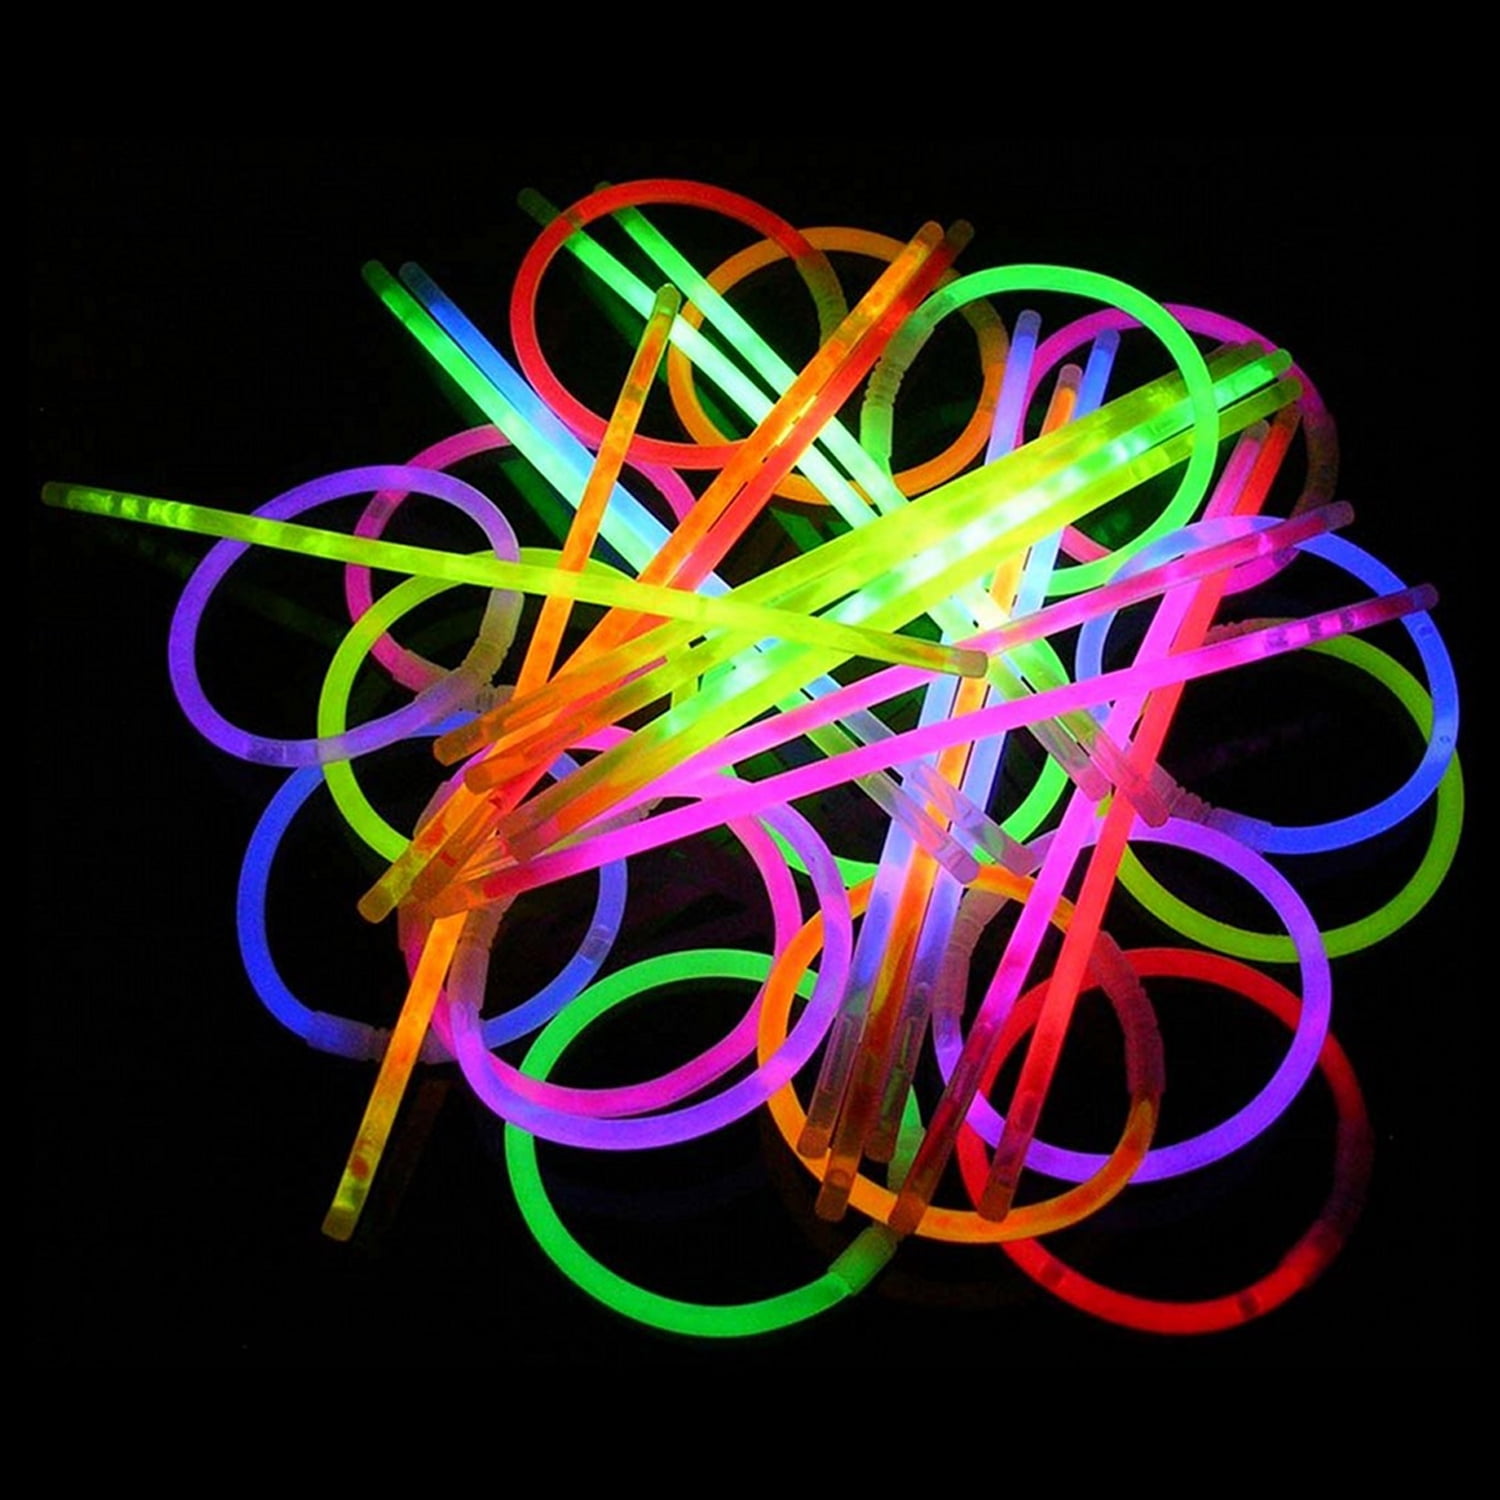 10/20/100 8" Glow Sticks Bracelets Neon Color Party Favors Pack with Connectors 